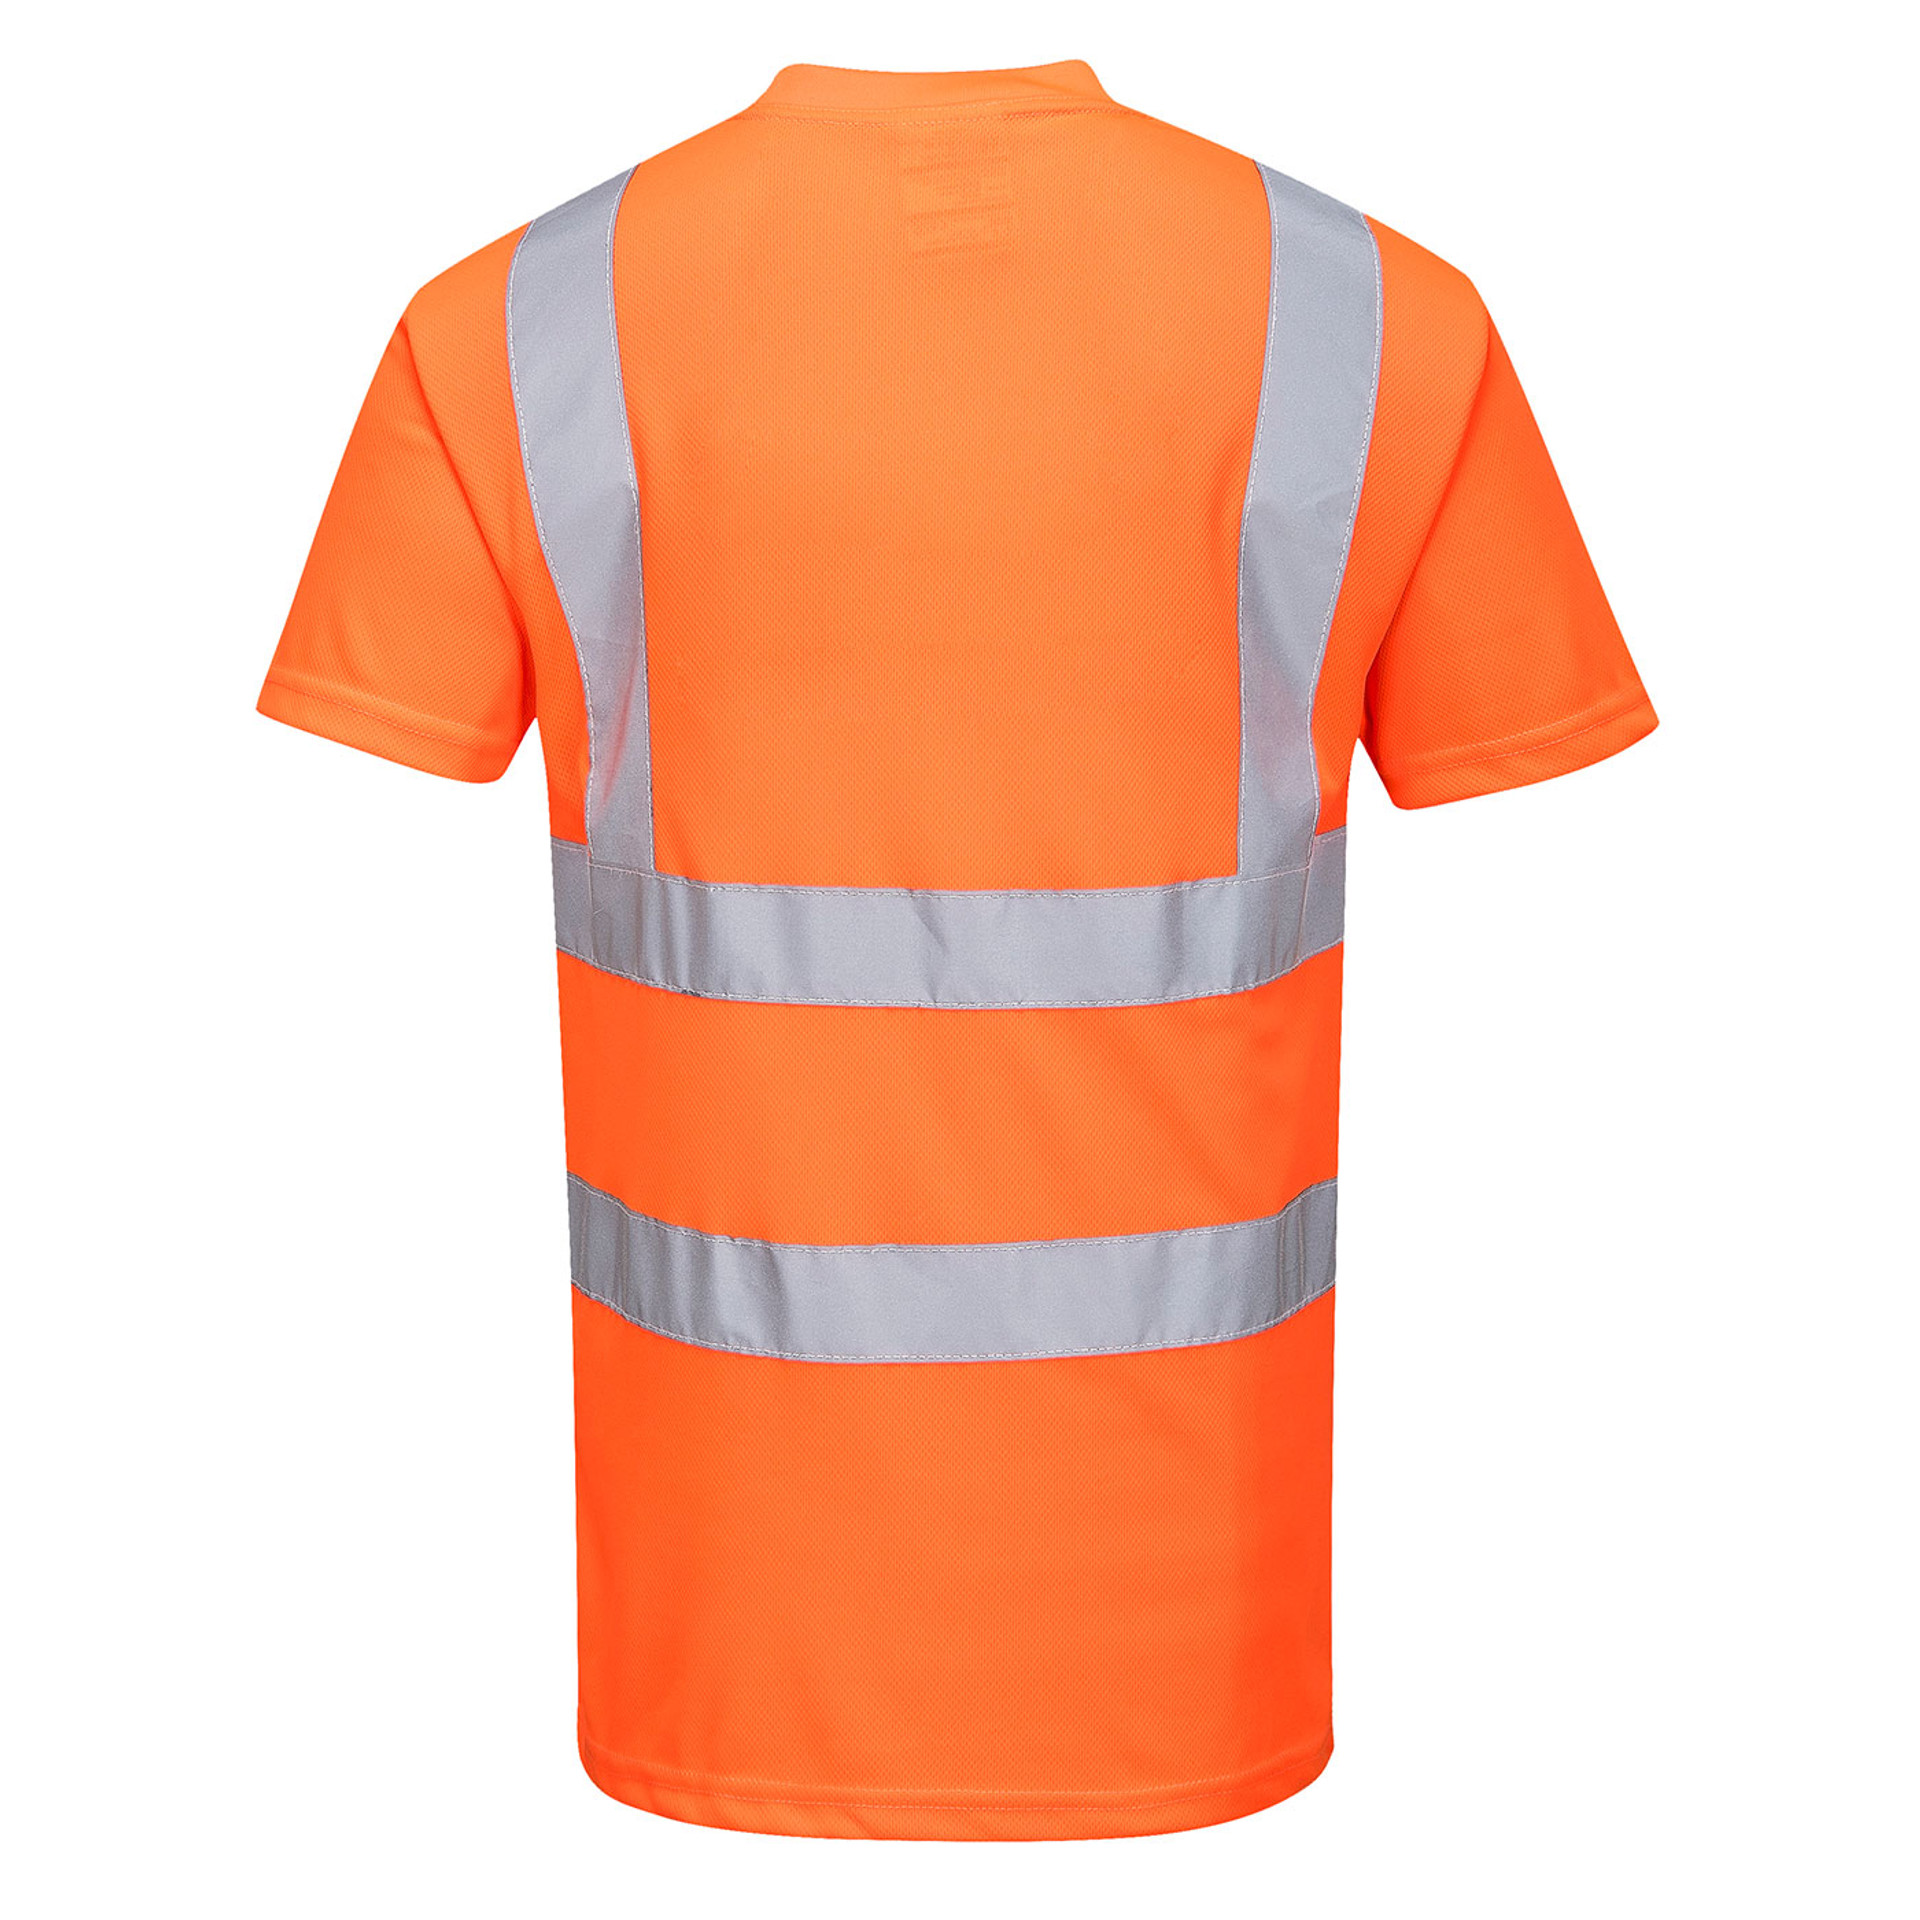 Hi Vis Clothing - FR Apparel - Safety Smart Gear - FRC & PPE